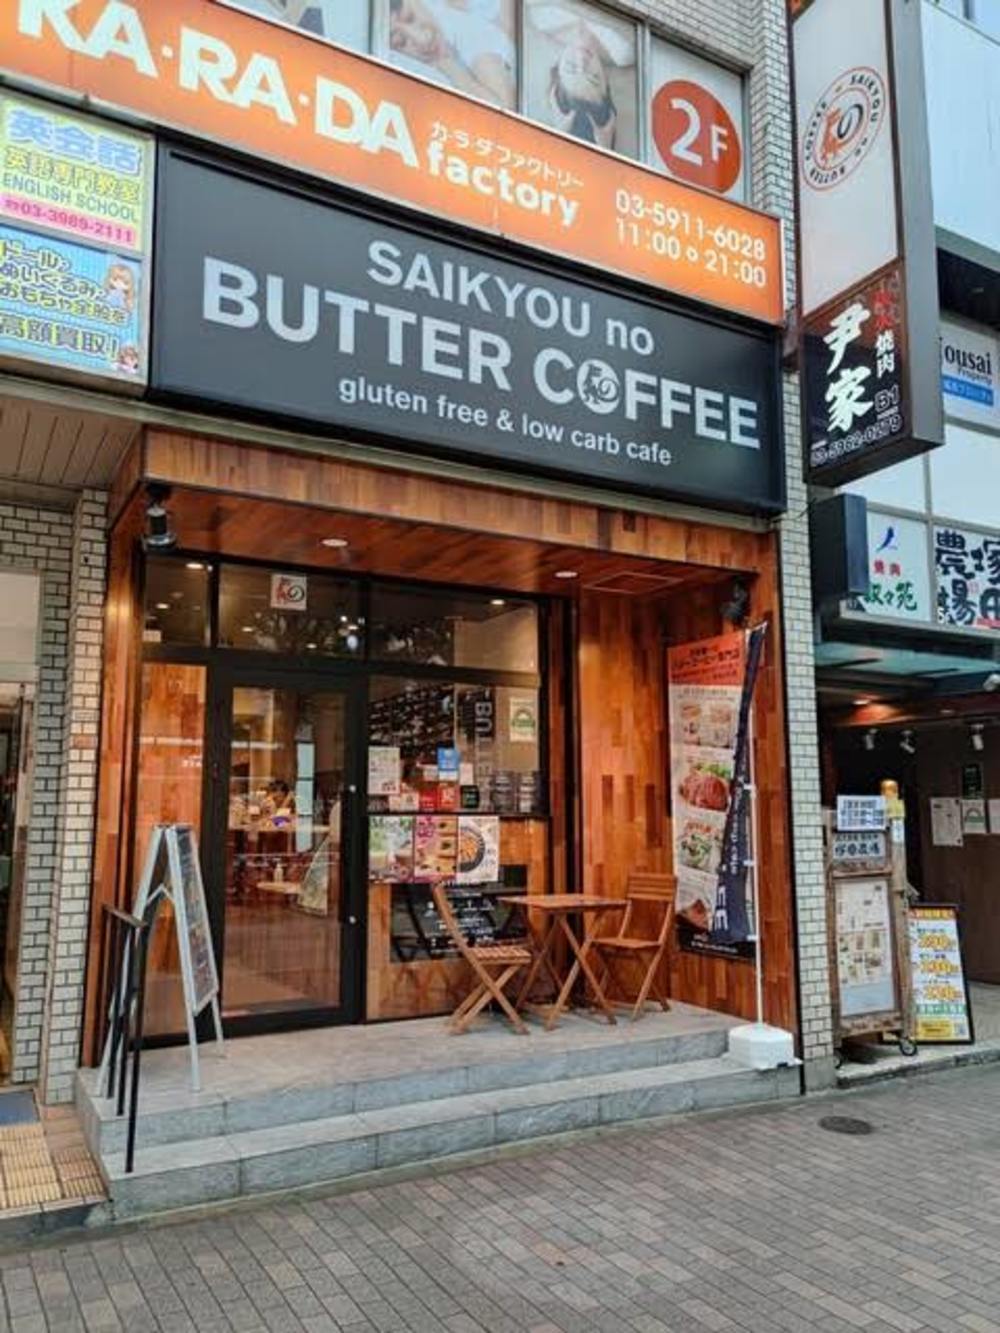 【朝カフェ会】
SAIKYOU no BUTTER COFFEE